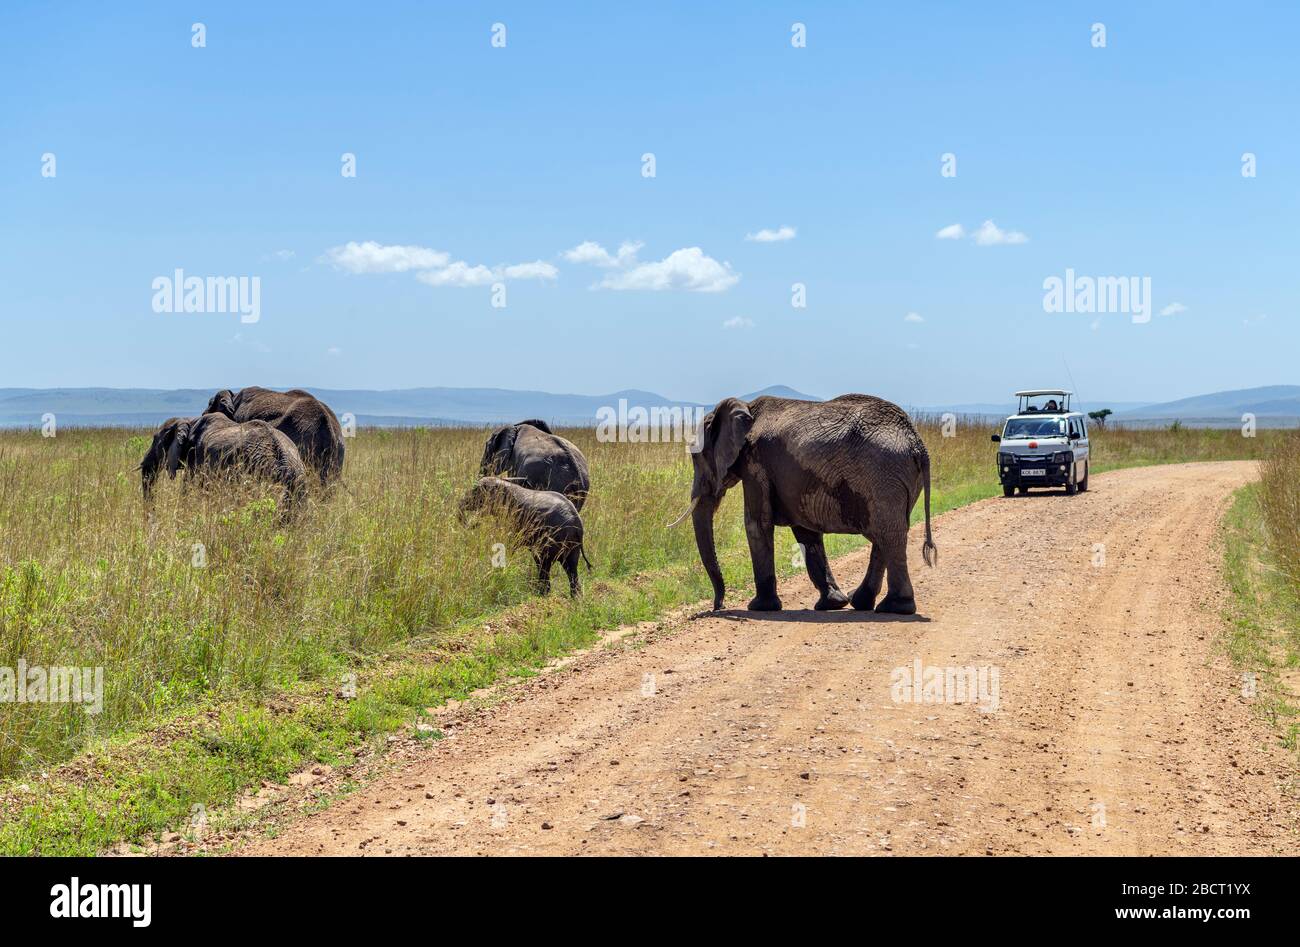 Éléphant de brousse africain (Loxodonta africana). Famille d'éléphants d'Afrique traversant la route en face d'une camionnette de safari, réserve nationale de Masai Mara, Kenya Banque D'Images